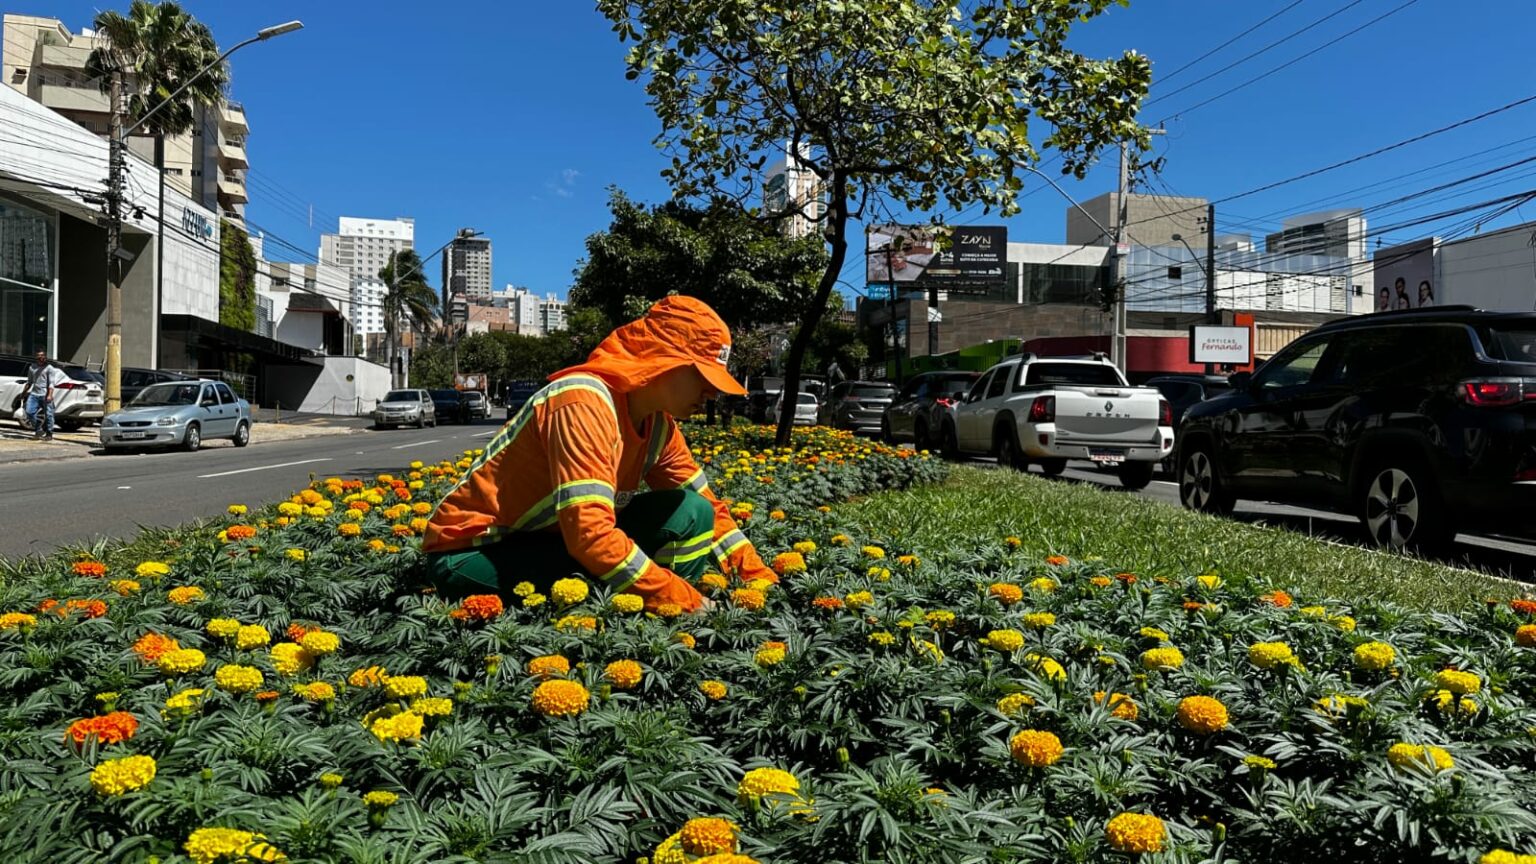 Elogiado pelos goianienses, paisagismo com flores da Avenida 136 será replicado em outras vias da capital (Fotos: Luciano Magalhães)